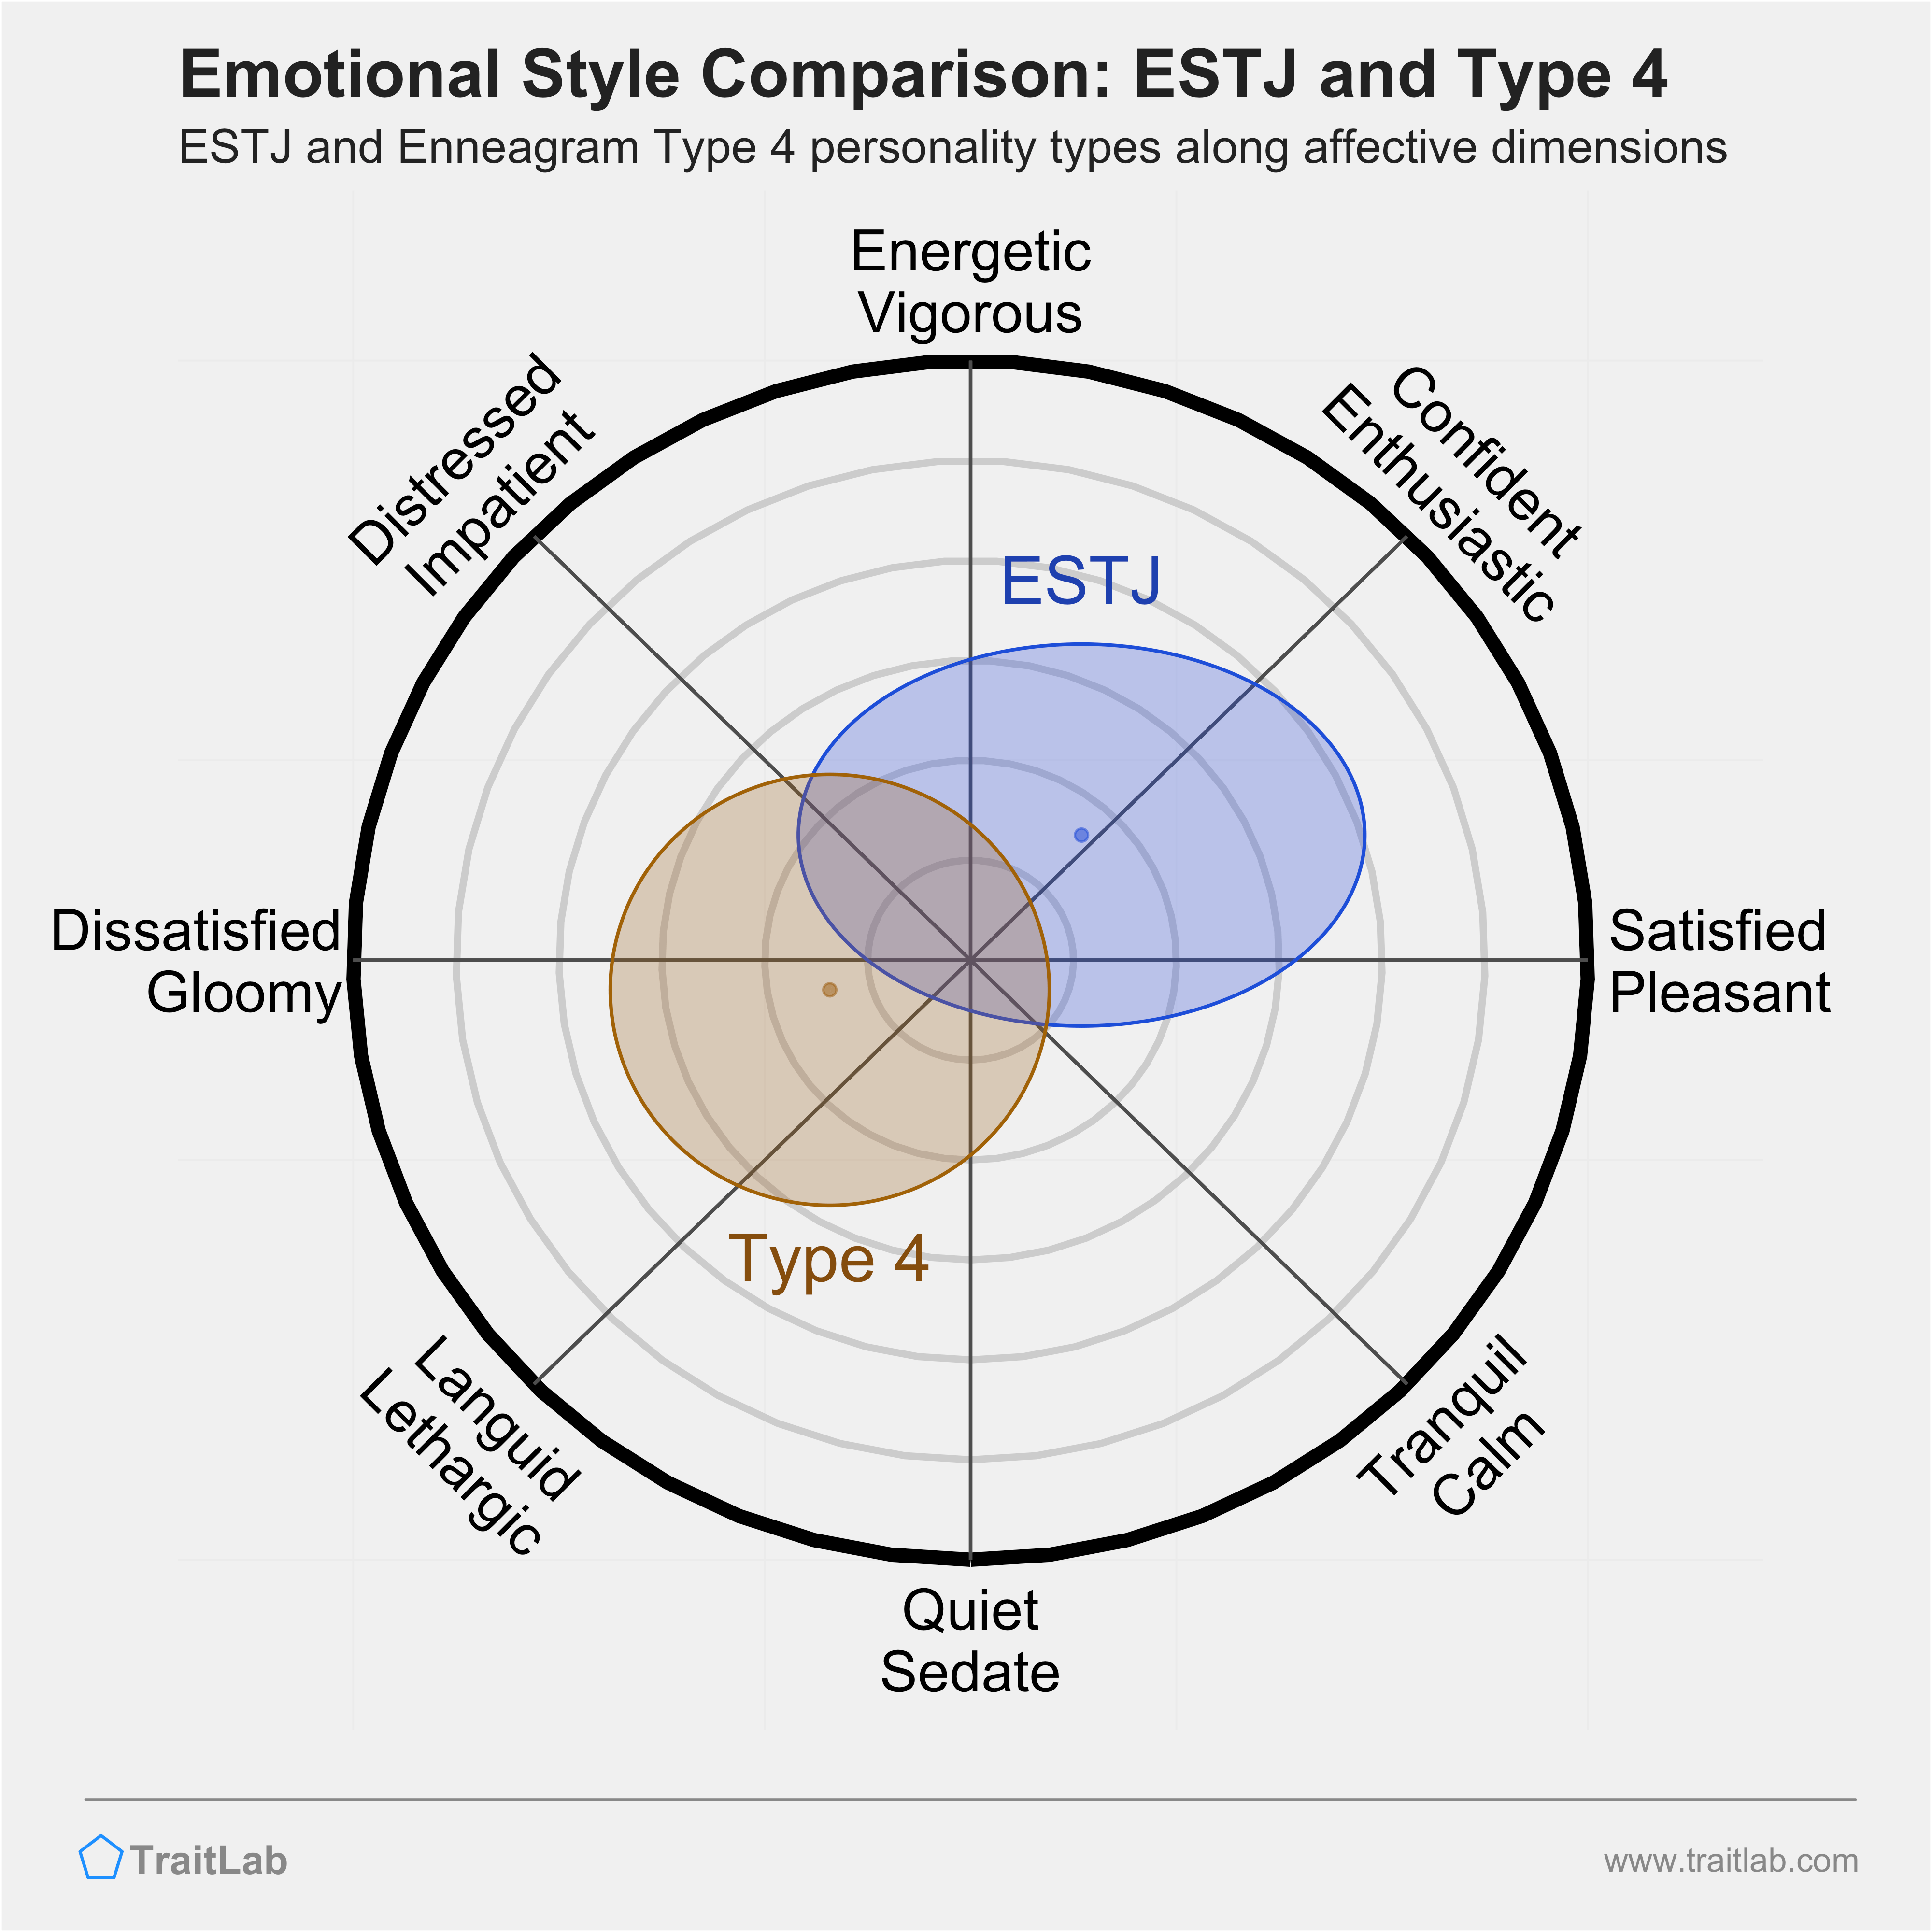 ESTJ and Type 4 comparison across emotional (affective) dimensions